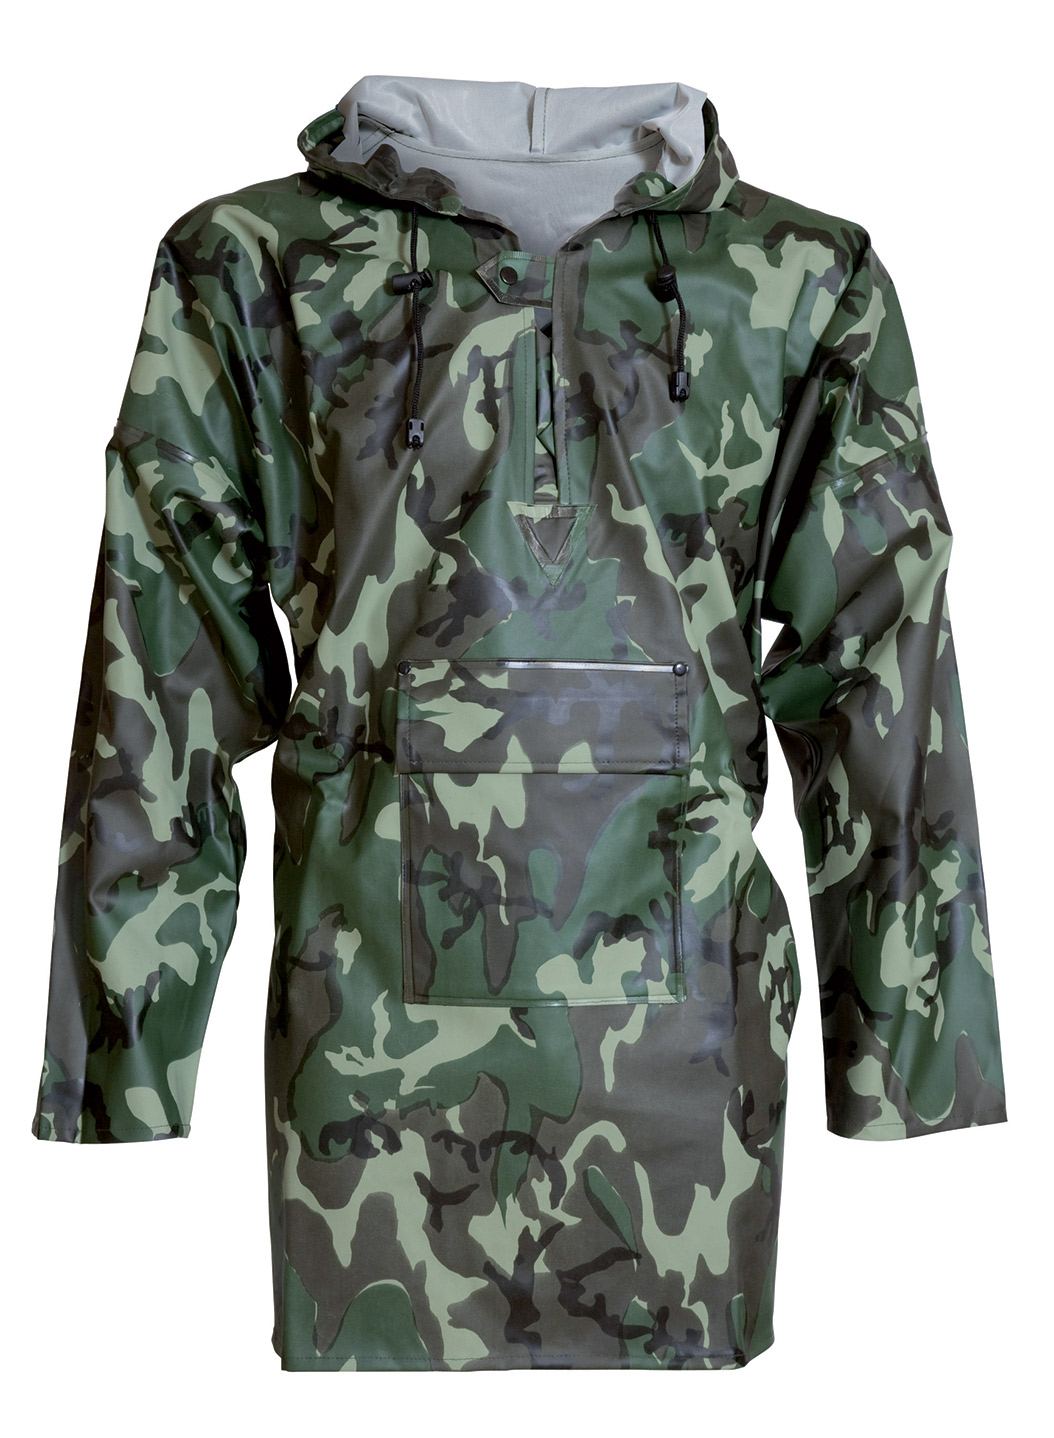 ELKA-Regenschutz, -Regen-Nässe-Wetter-Schutz-Jagd-Schlupf-Jacke, PVC LIGHT, 320g/m², camouflage